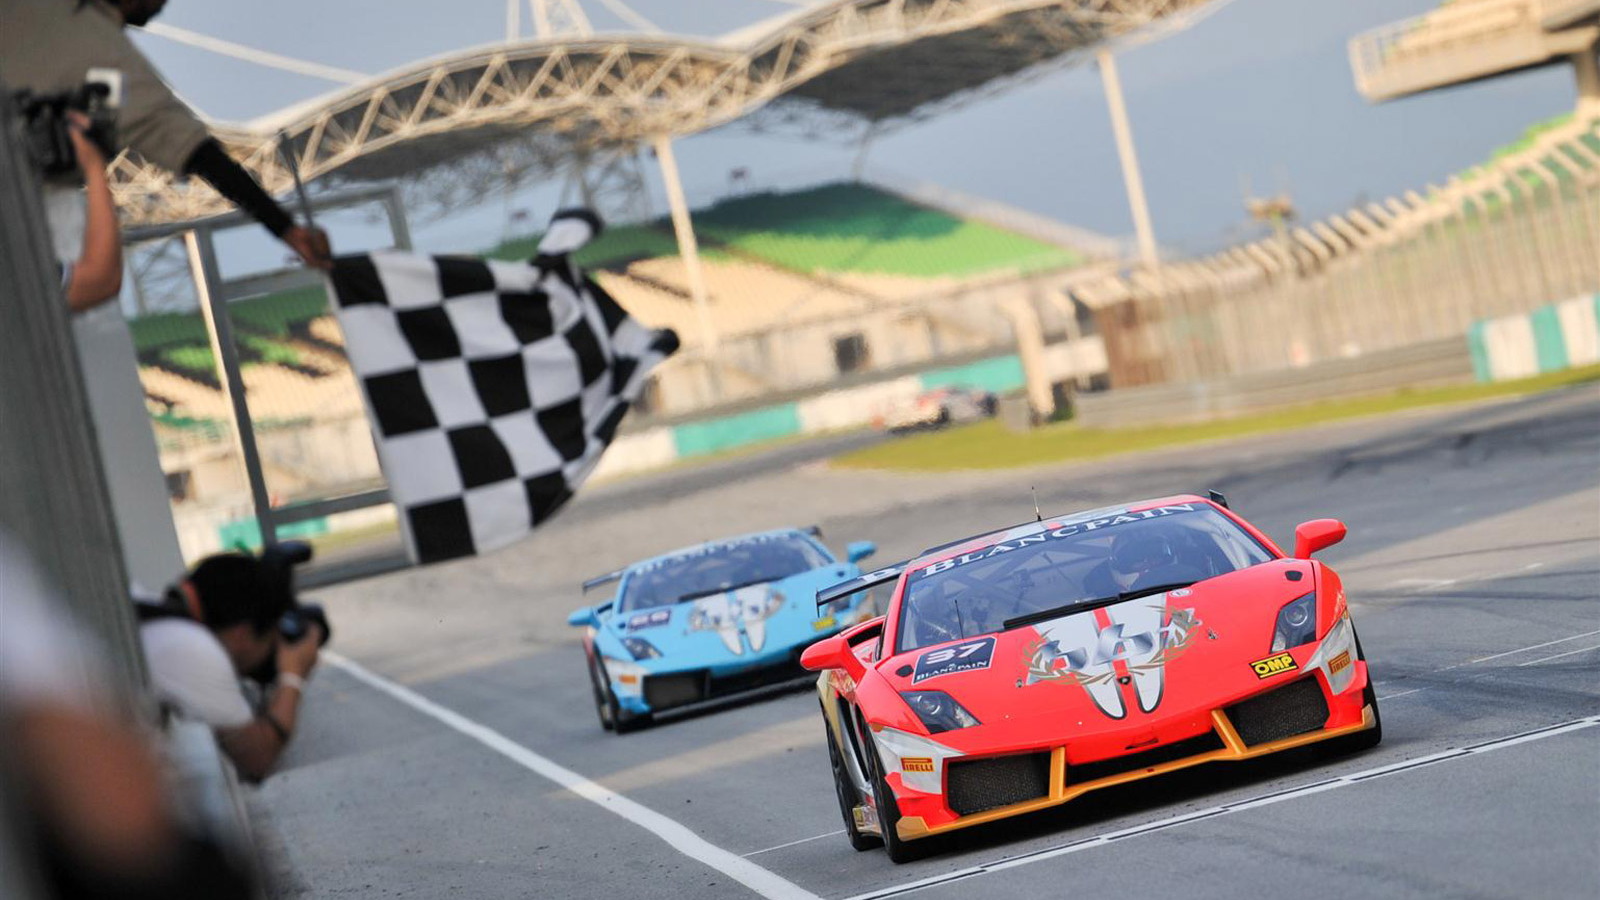 Lamborghini Blancpain Super Trofeo race at Malaysia’s Sepang International Circuit